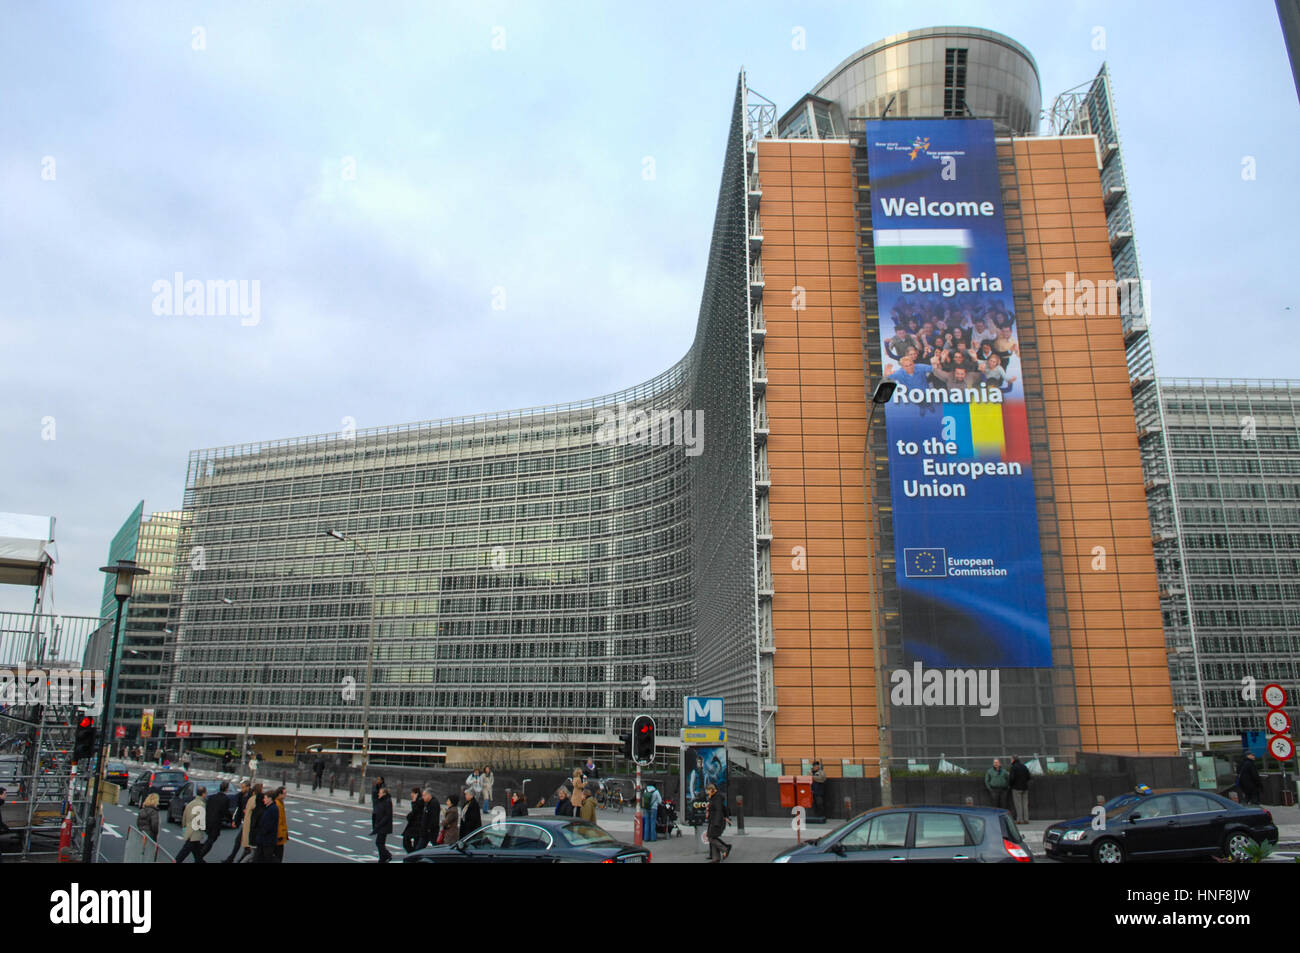 Belgique, Bruxelles, 14.12.2006.Une bannière est vue au Berlaymont, au cours de l'évènement sur l'adhésion des nouveaux États membres Bulgar Banque D'Images